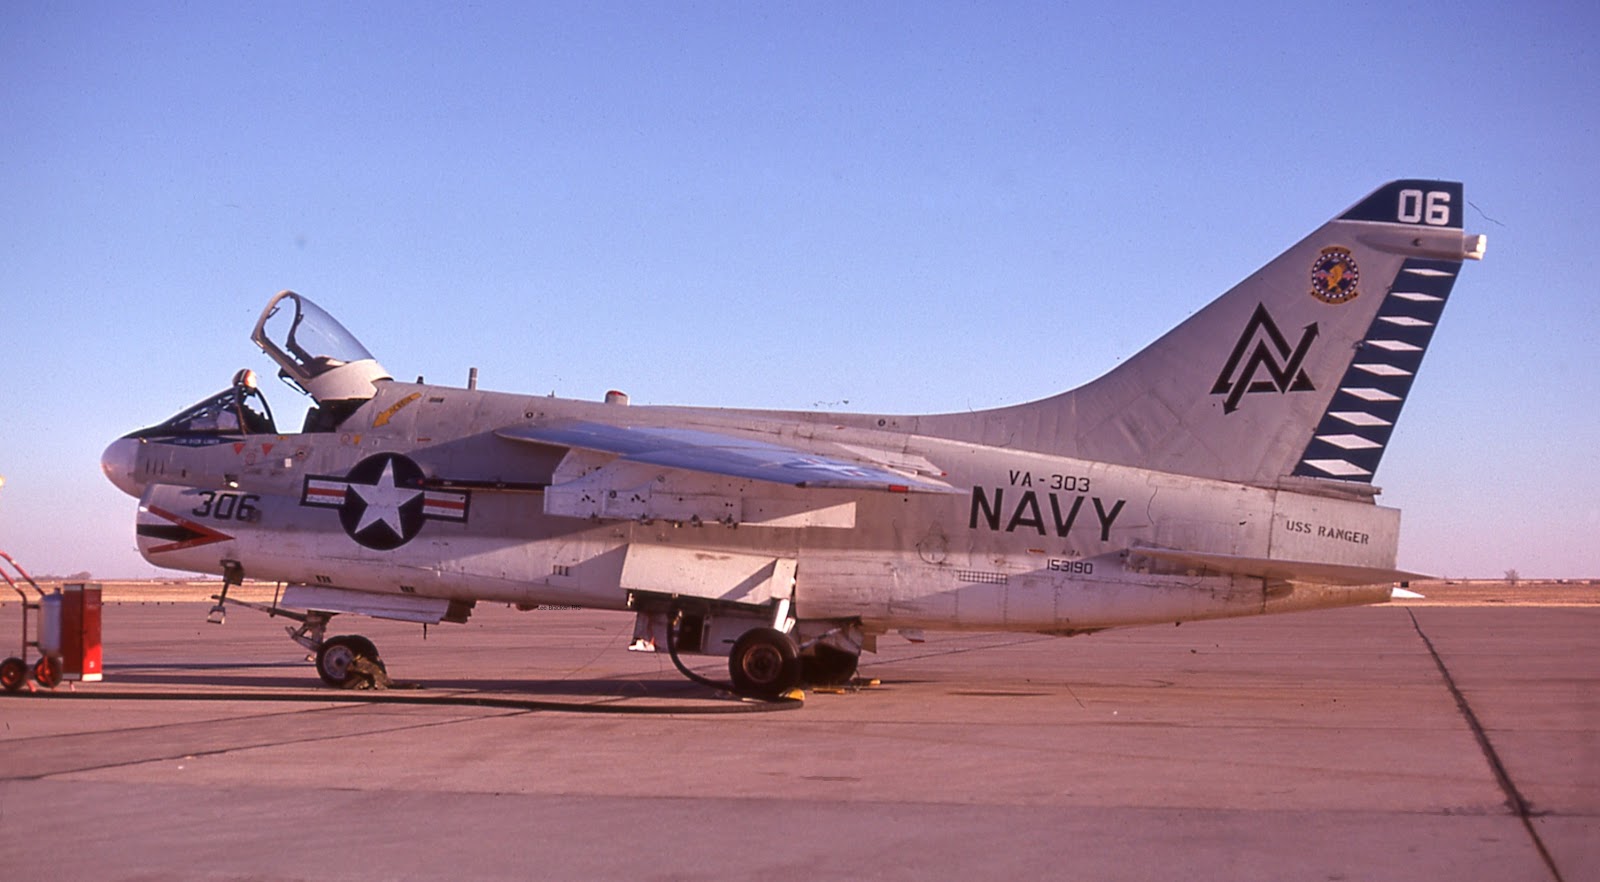 A-7A,+153190,+VA-303,+June+1977,+Lee+Bracken.jpg